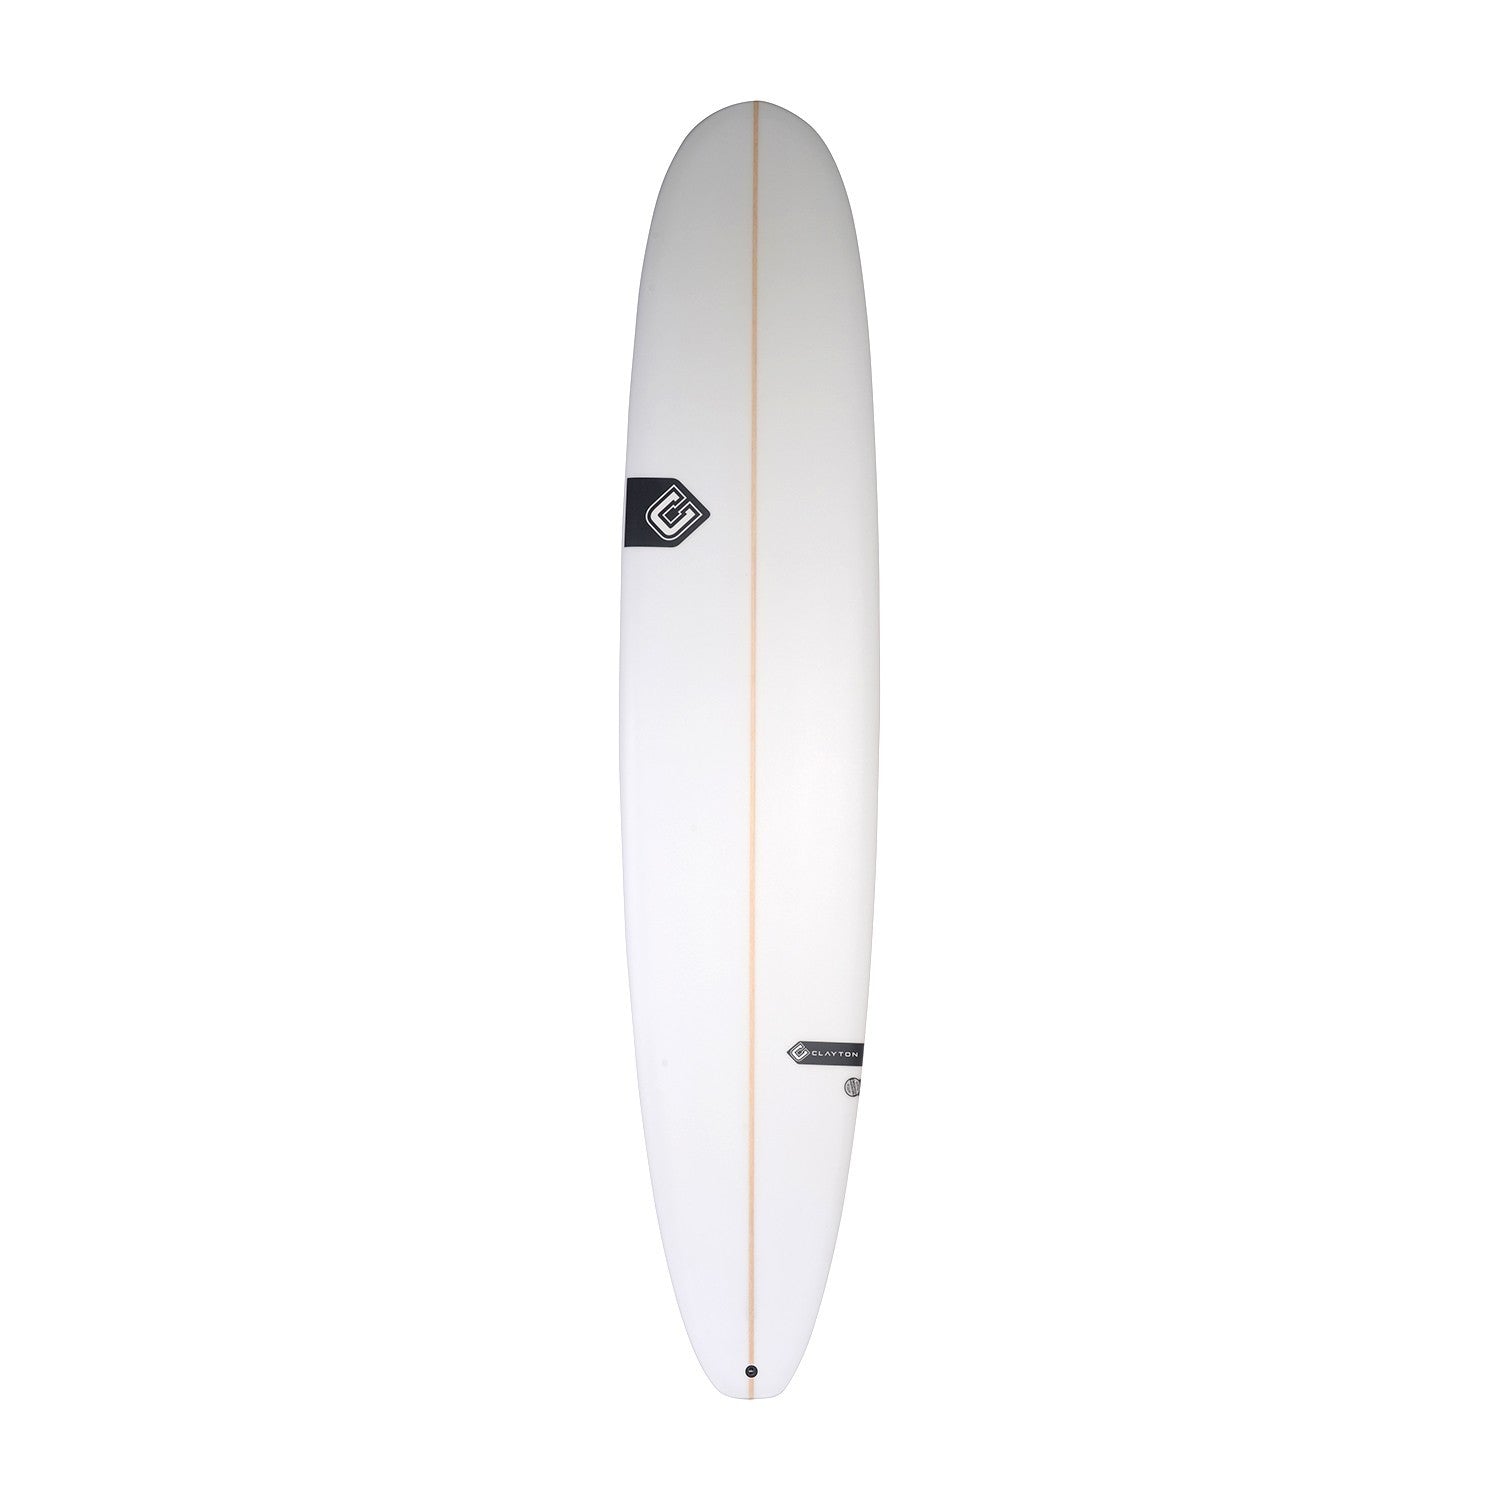 CLAYTON Surfboards - Nose Rider (PU) - 9'0